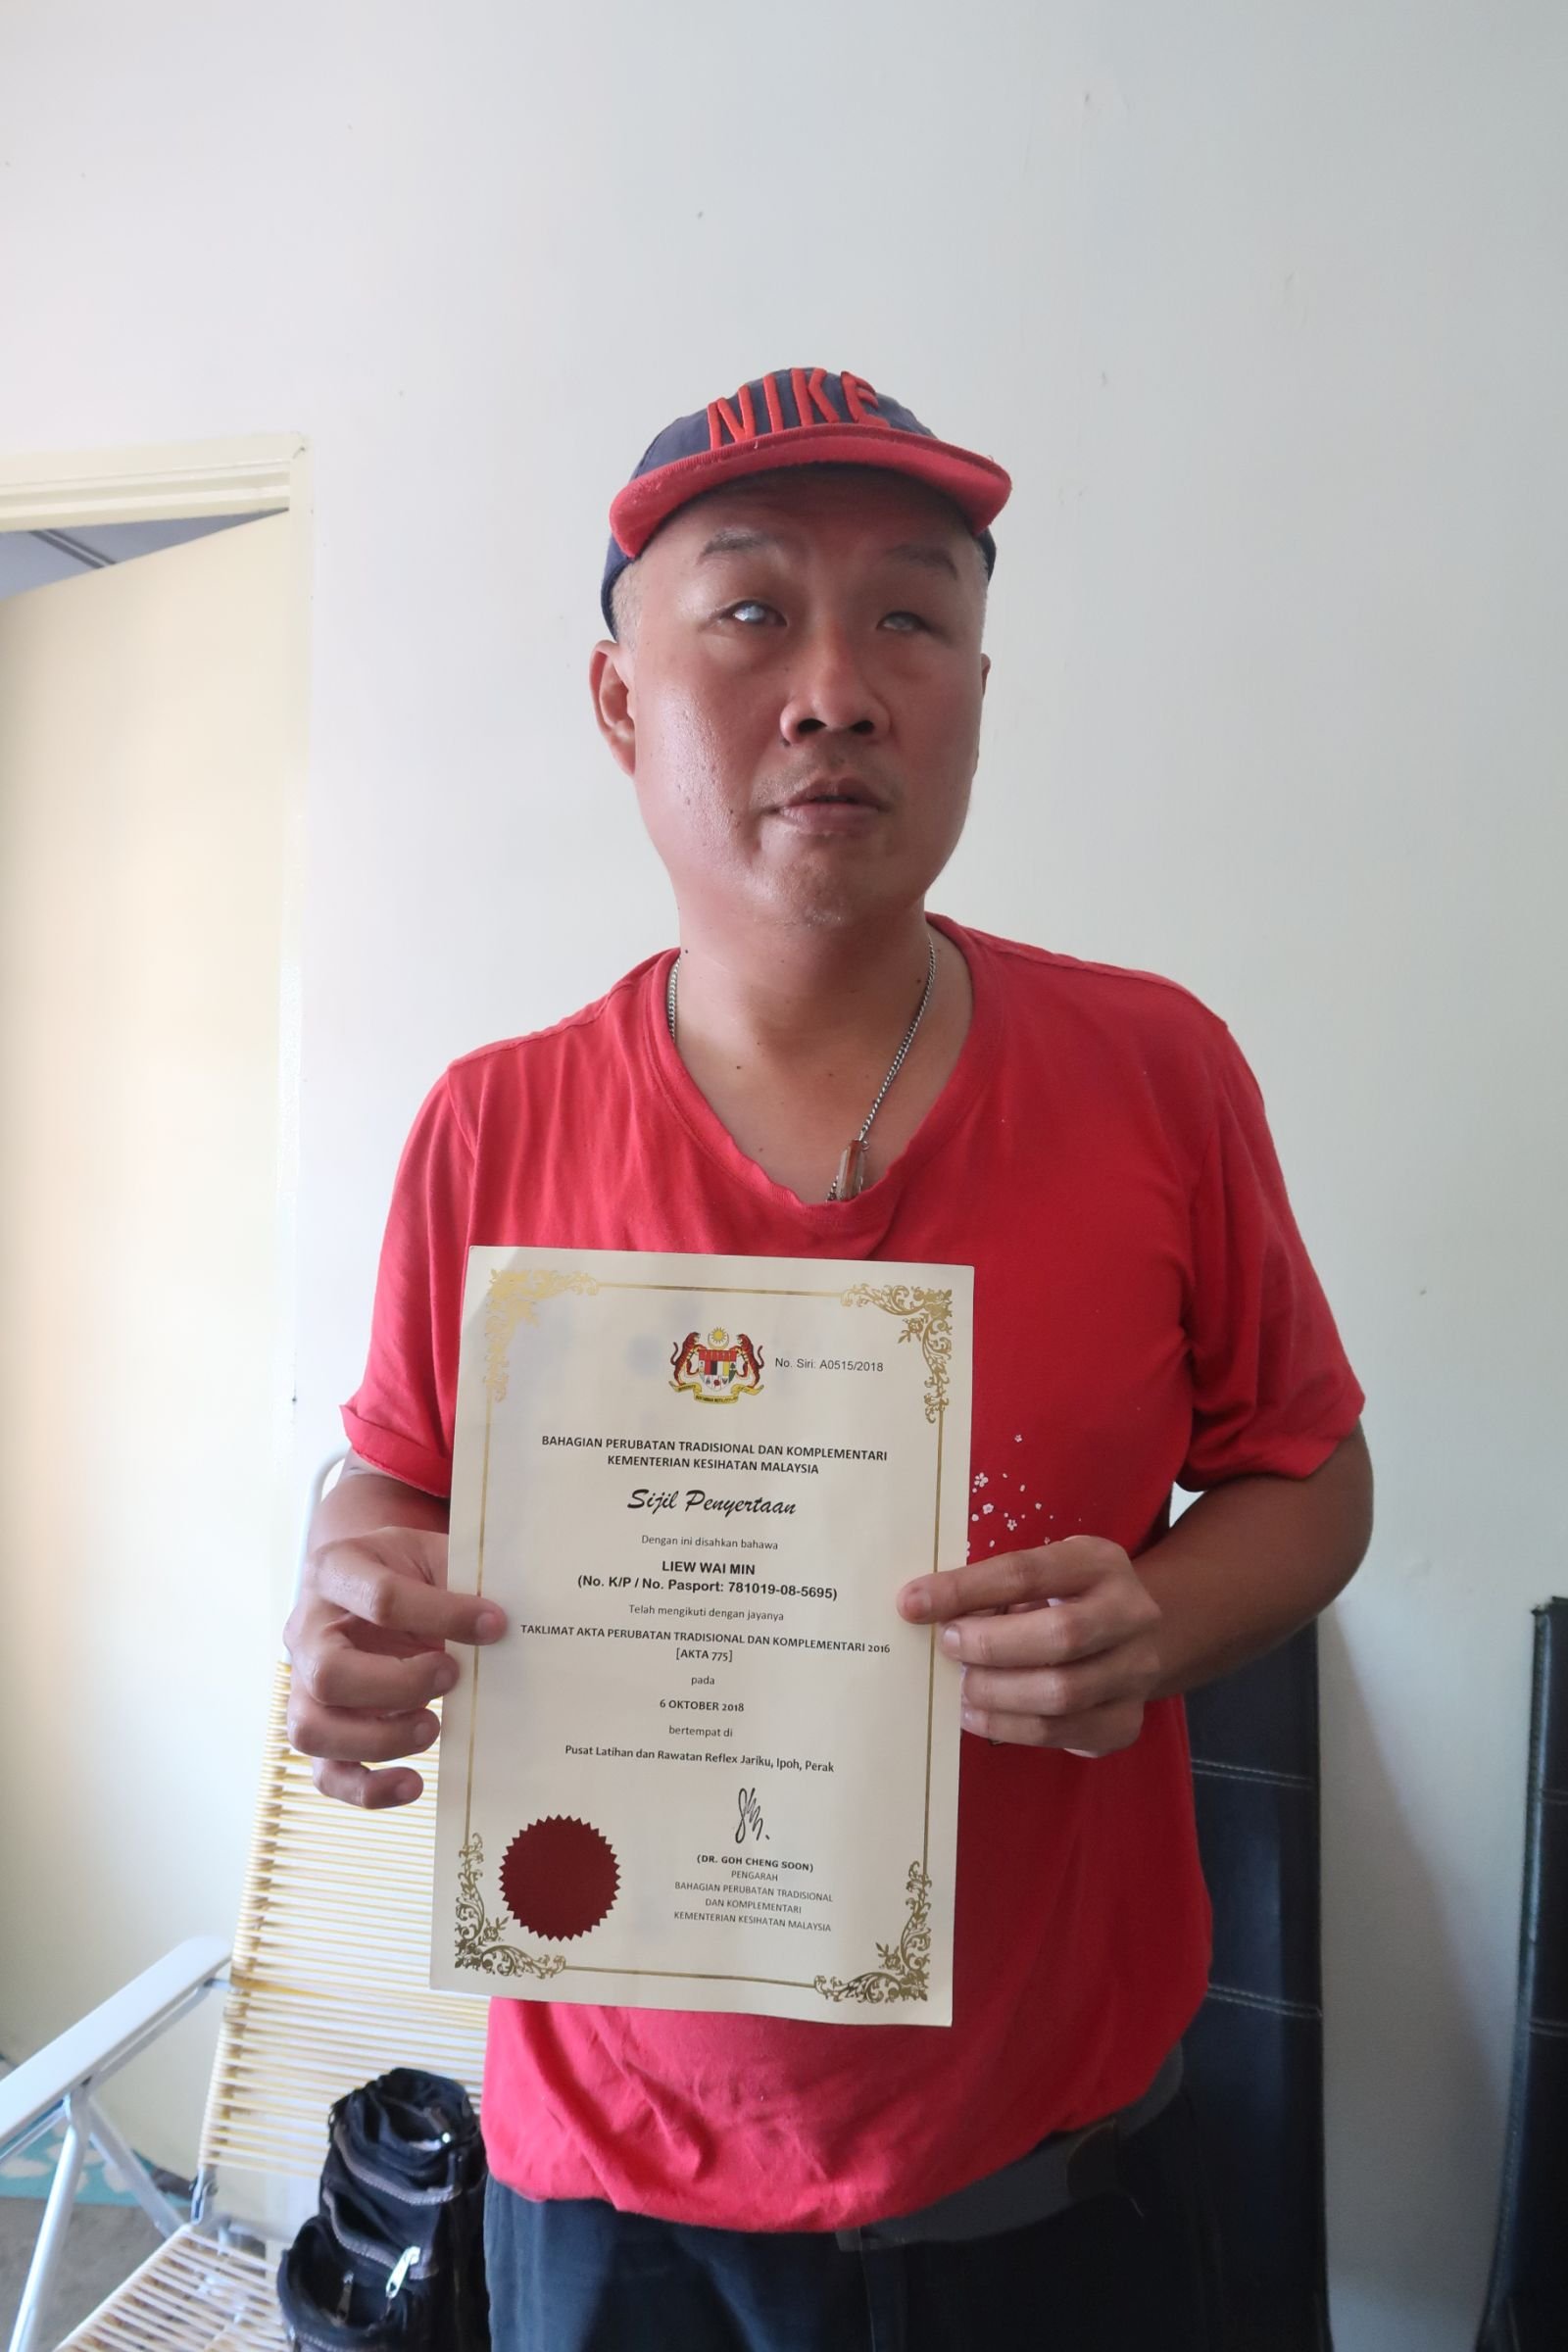 刘伟民持有卫生部传统及辅助医疗单位所认证的证书，按摩和推拿技能受认可。